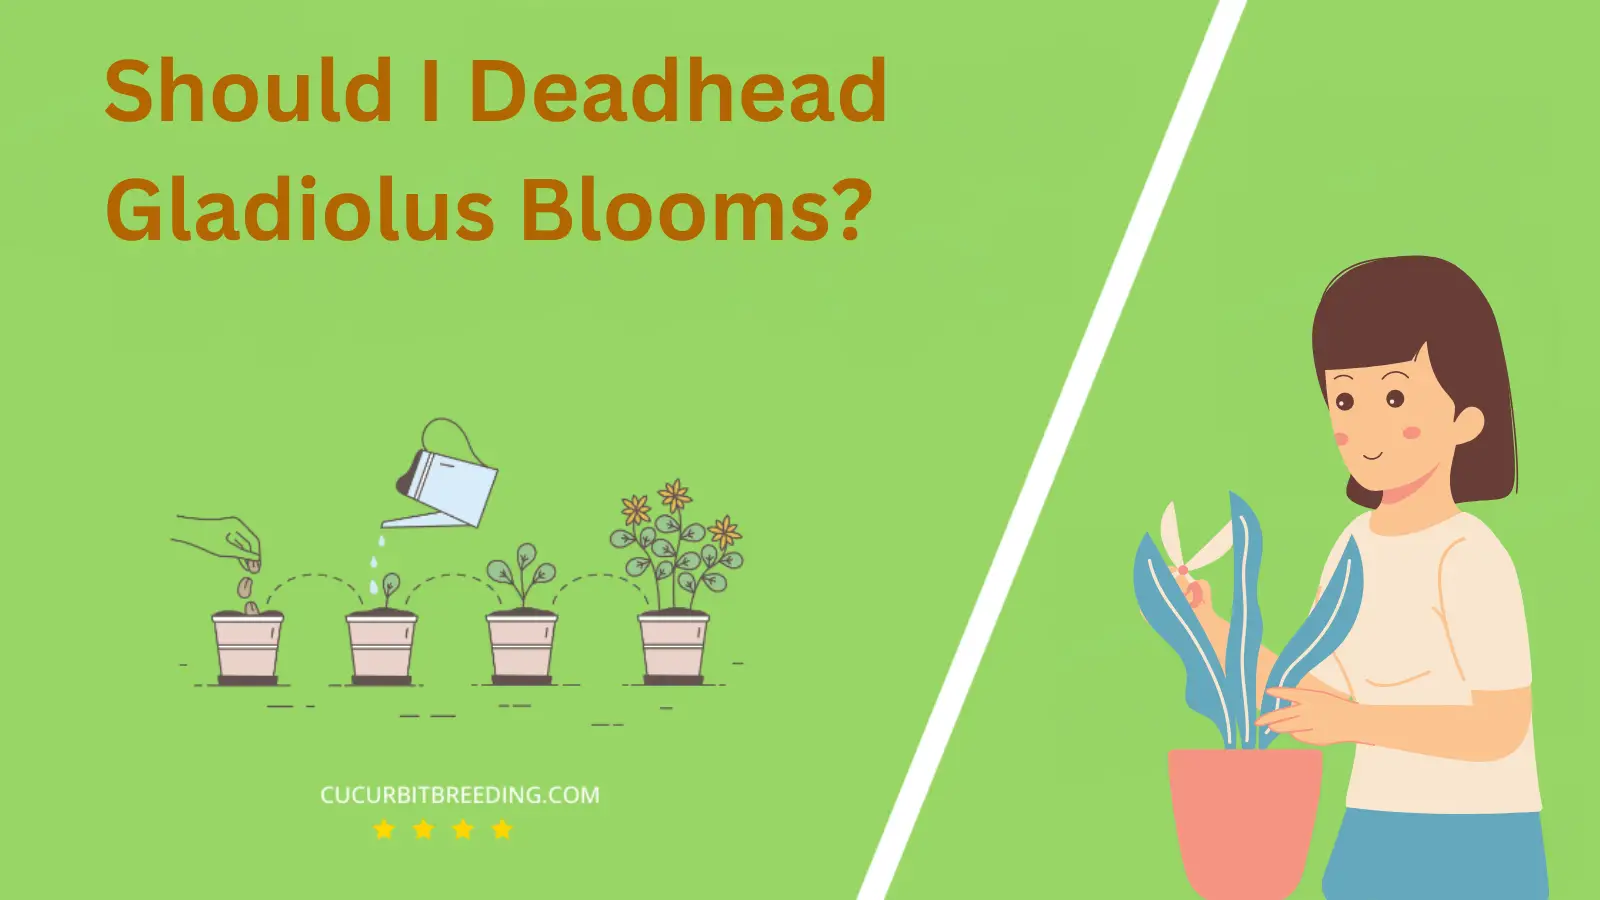 Should I Deadhead Gladiolus Blooms?